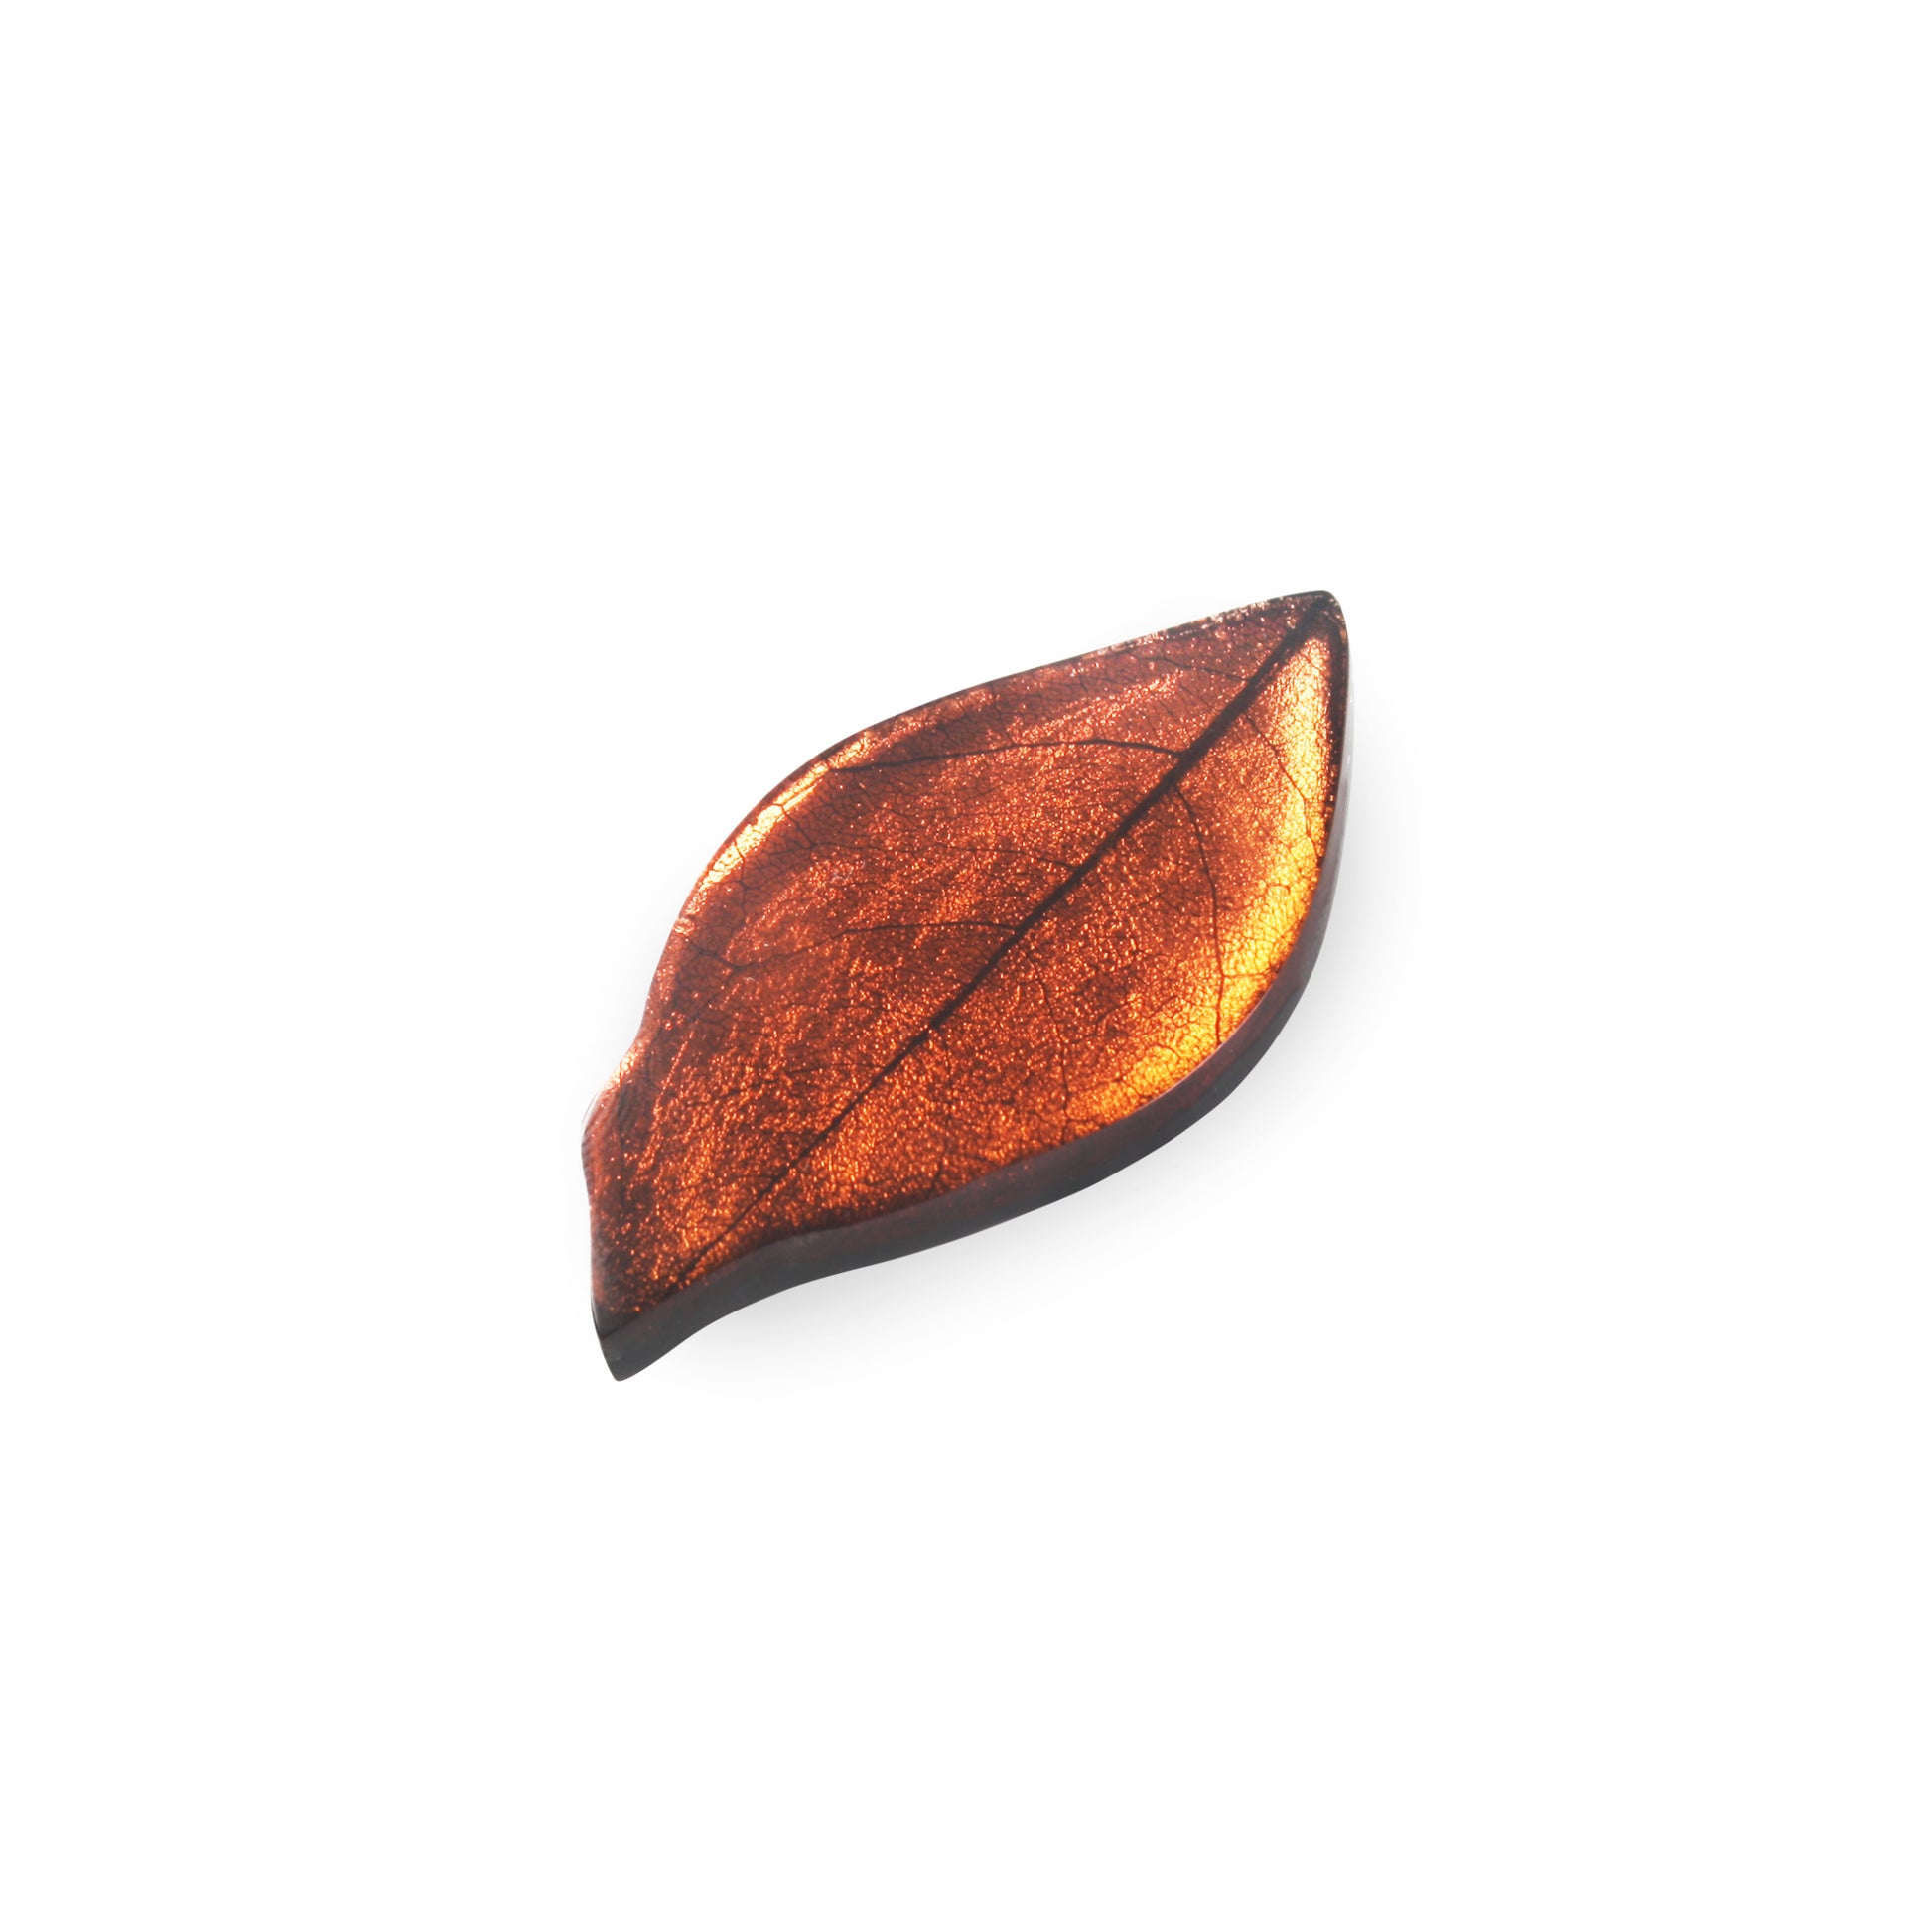 Apricot Skeletal Leaf Shiny Brooch